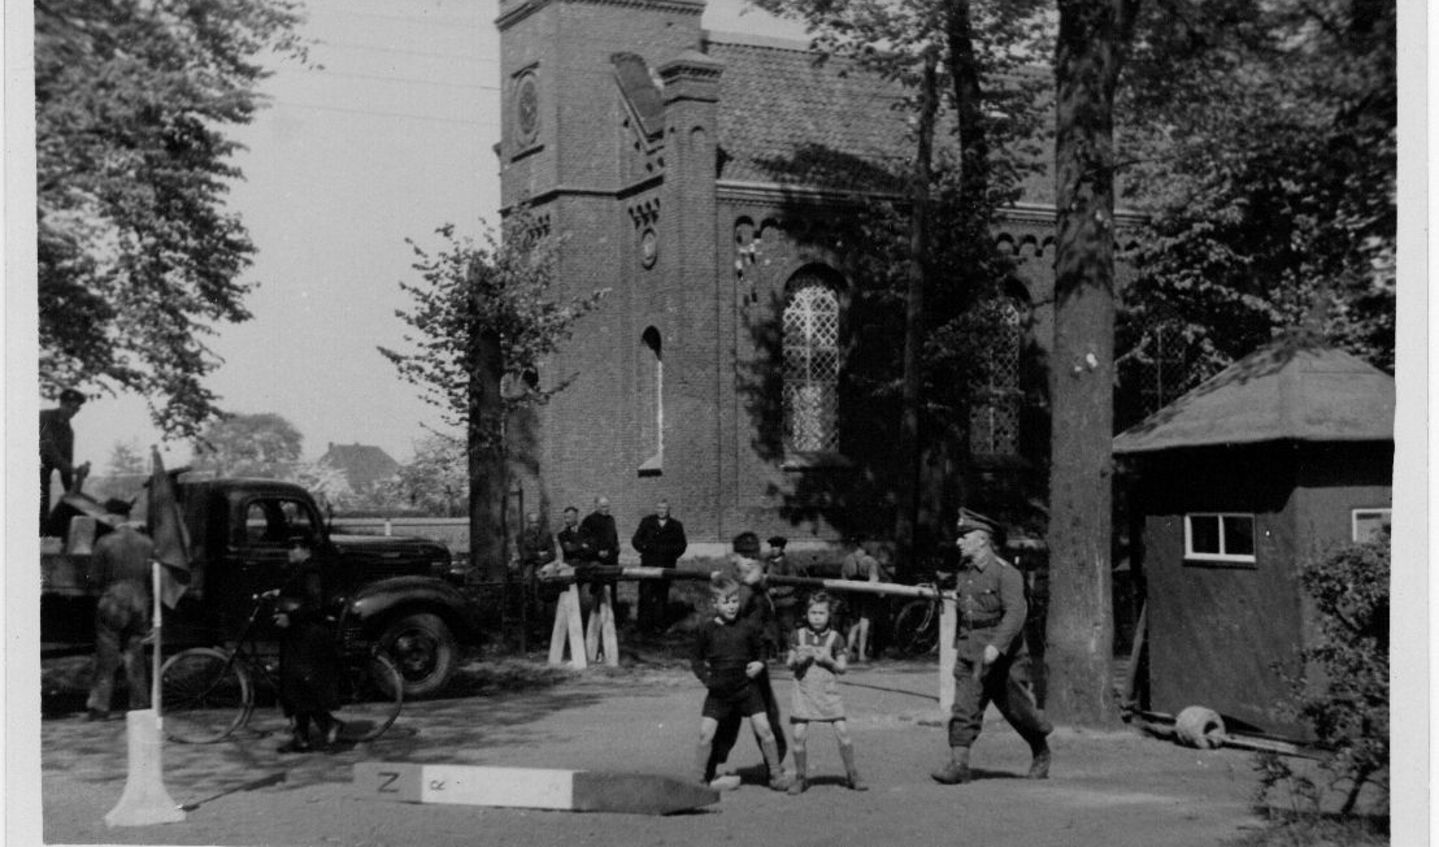 De nieuwe grensovergang bij de protestantse kerk na de afscheiding van Suderwick-West in 1949, archief voormalige gemeente Dinxperlo. Foto: Collectie Ben Maandag